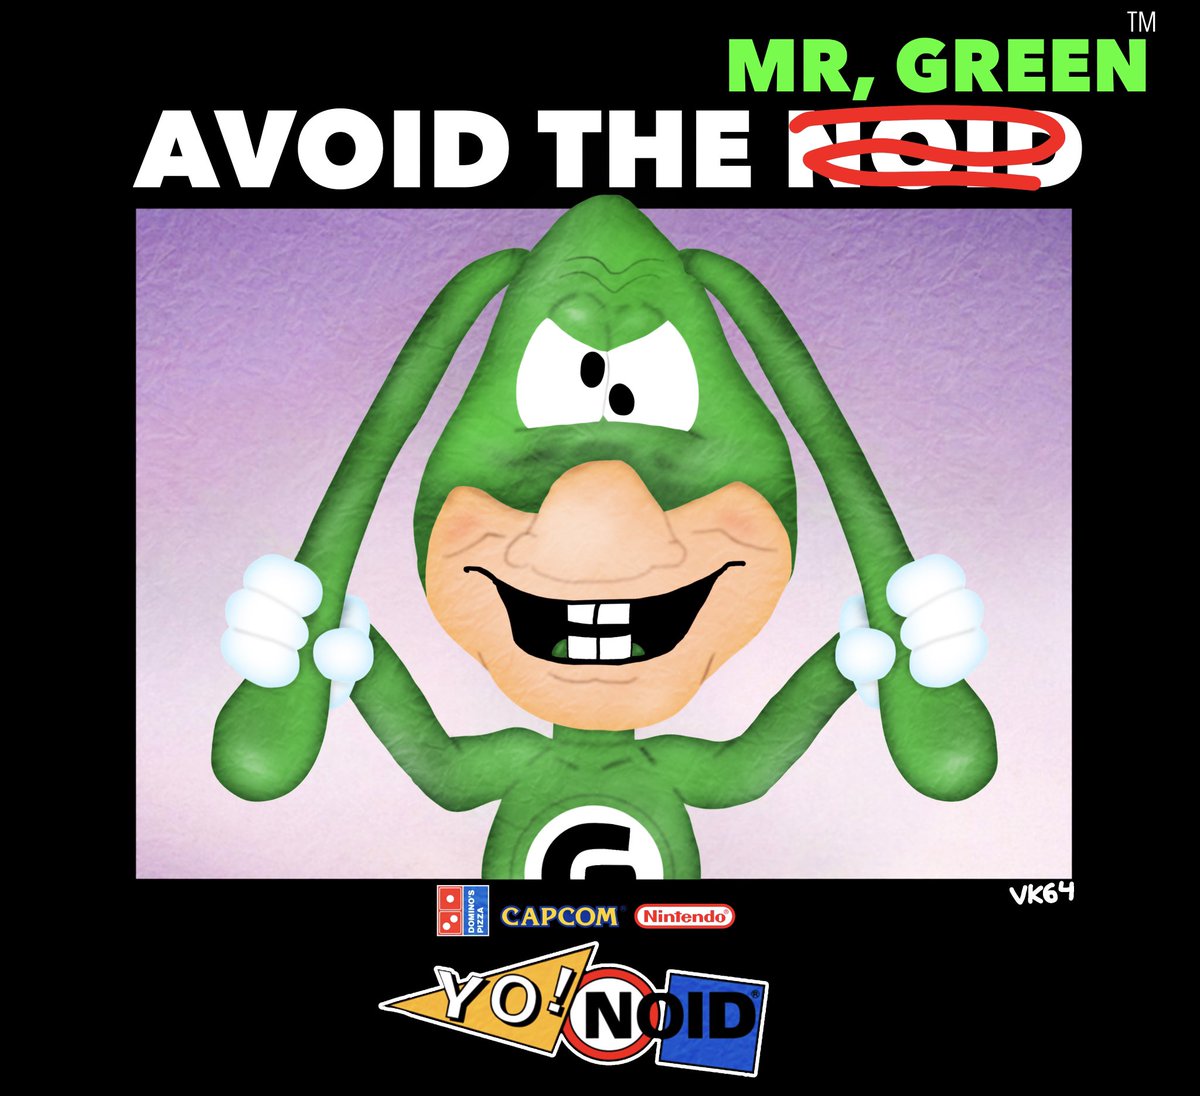 AVOID THE MR, GREEN! #Yonoid #TheNoid #fanart #MrGreen #DominosPizza